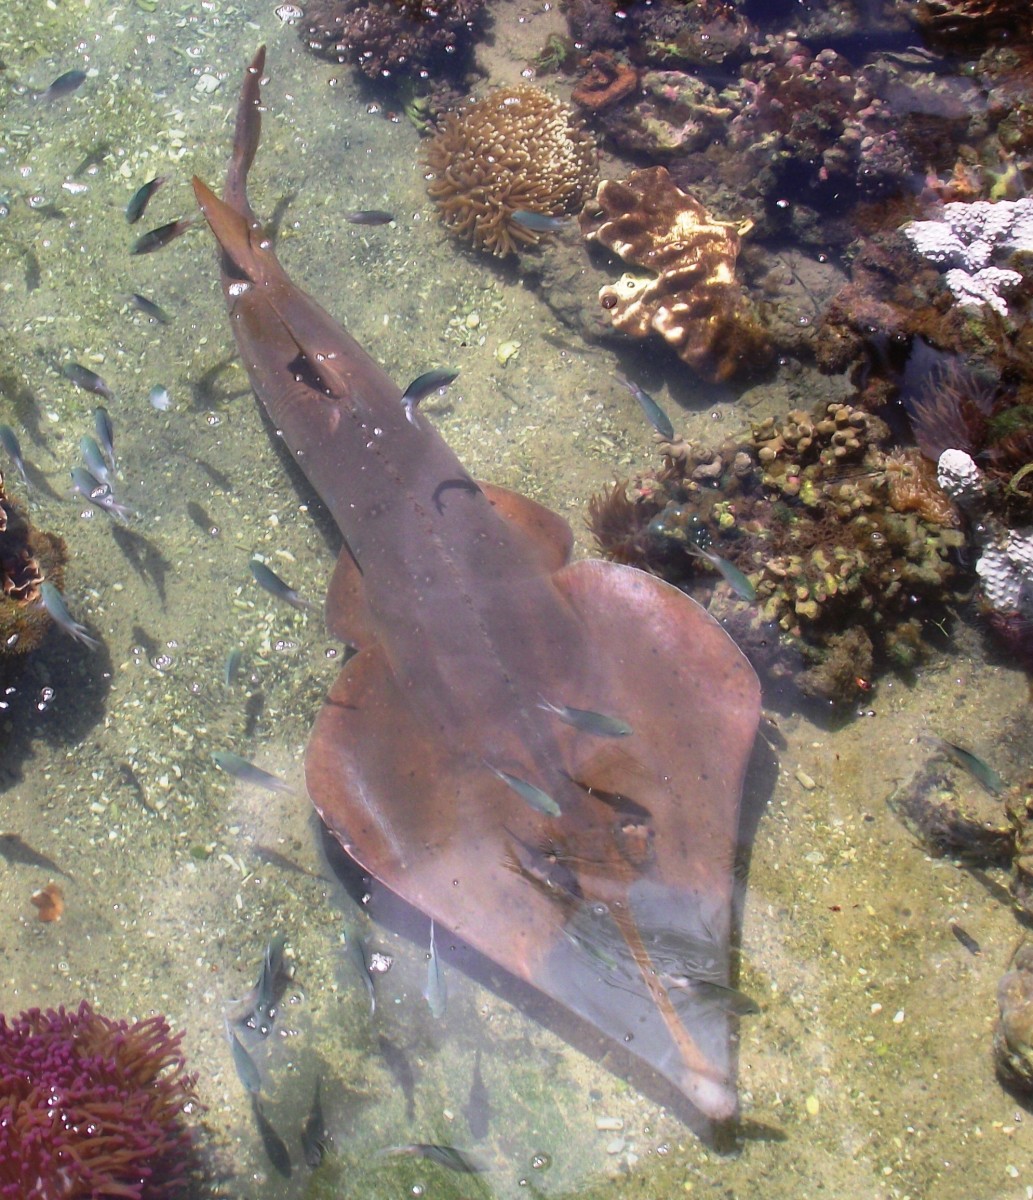 Shovel Nosed Sharks are often seen in the Whitsundays